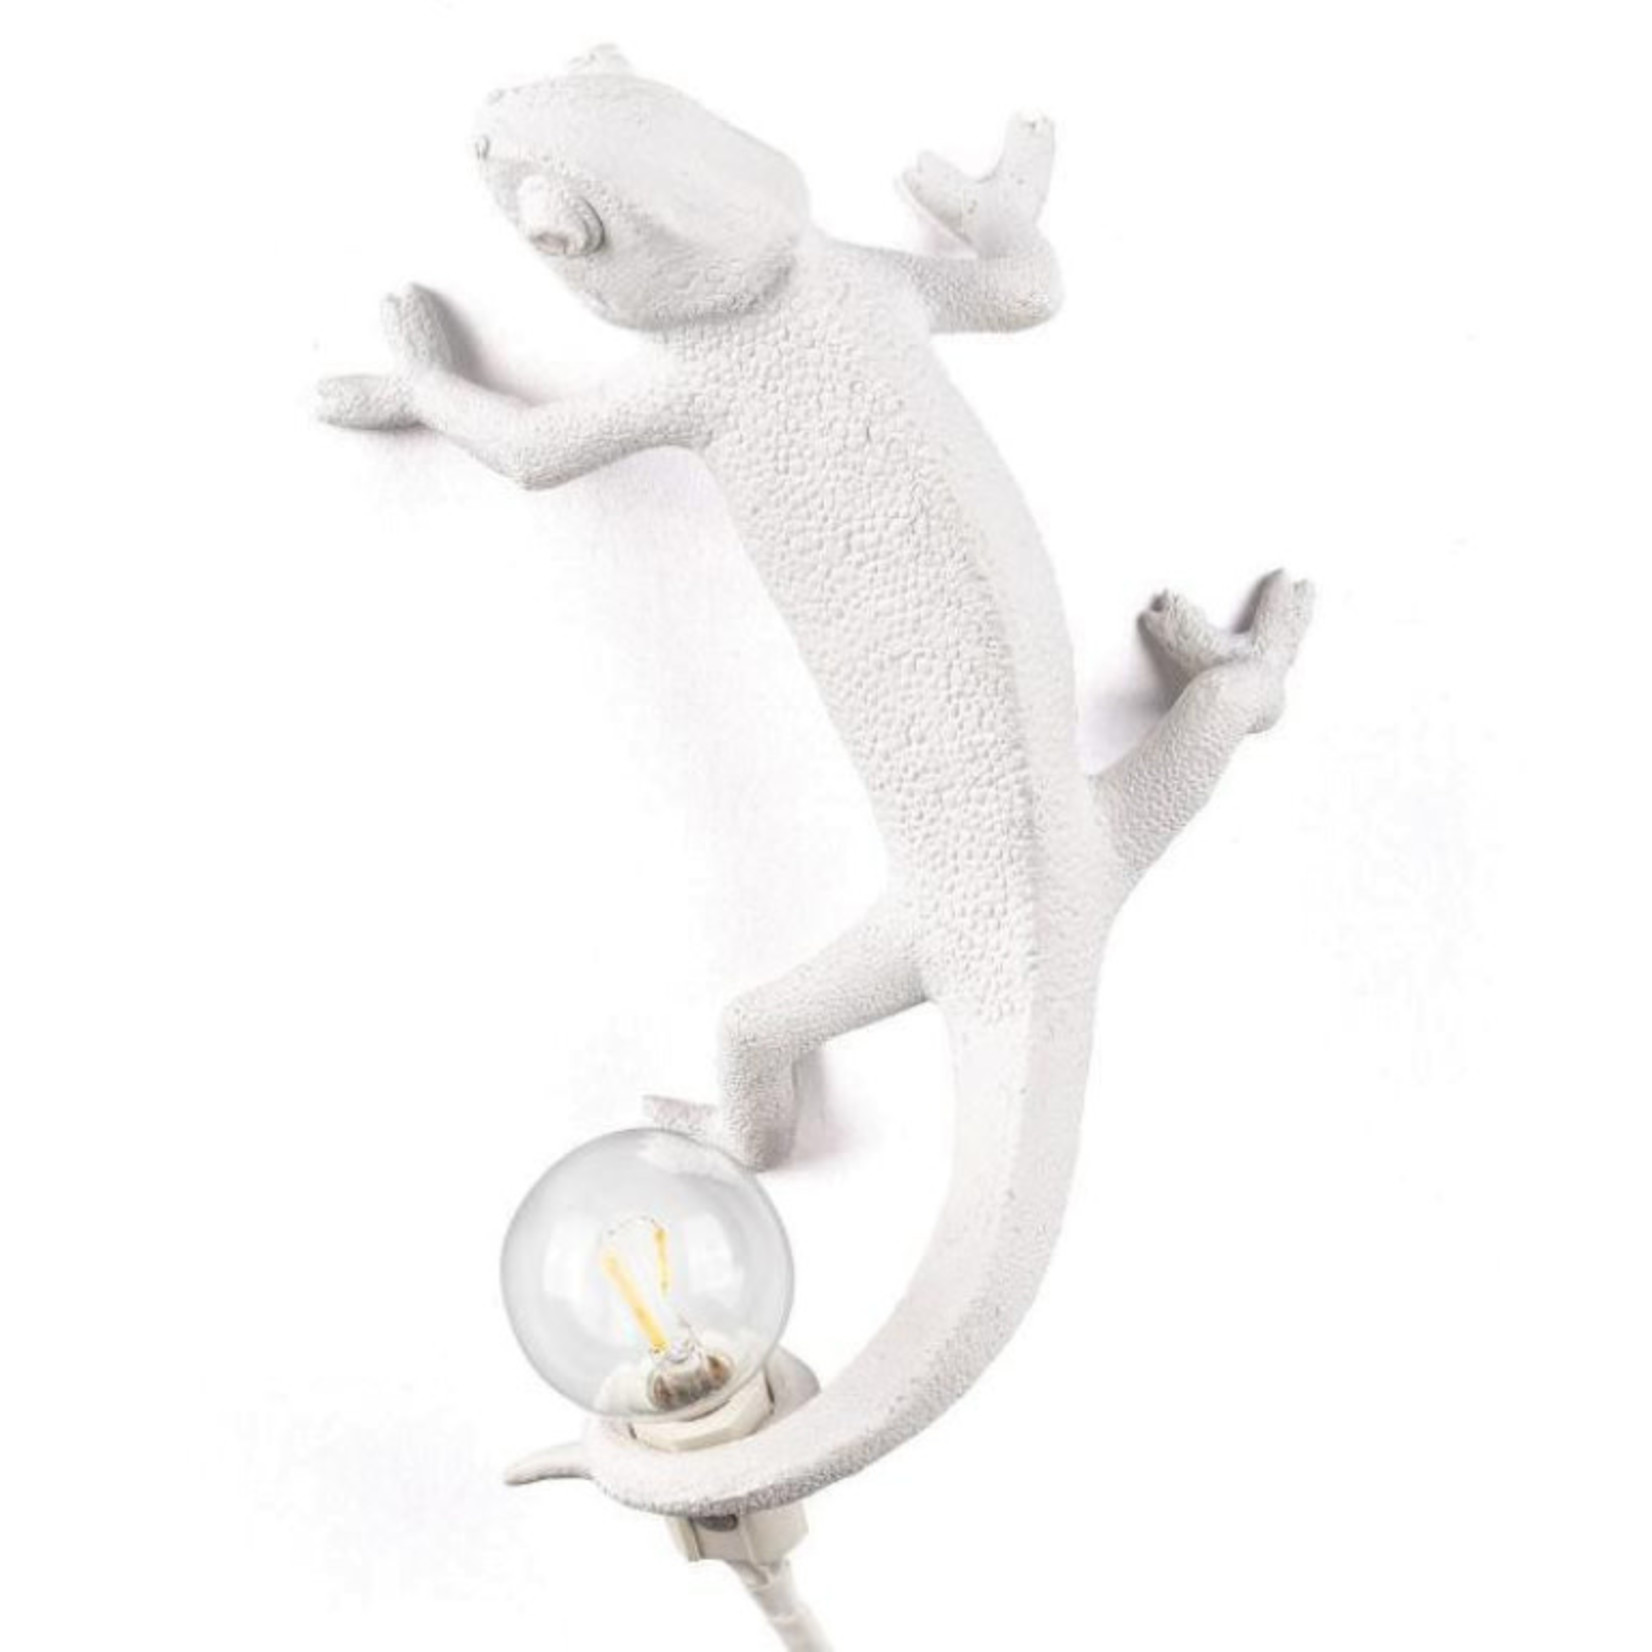 SELETTI SELETTI - Chameleon lamp going up - Left - White